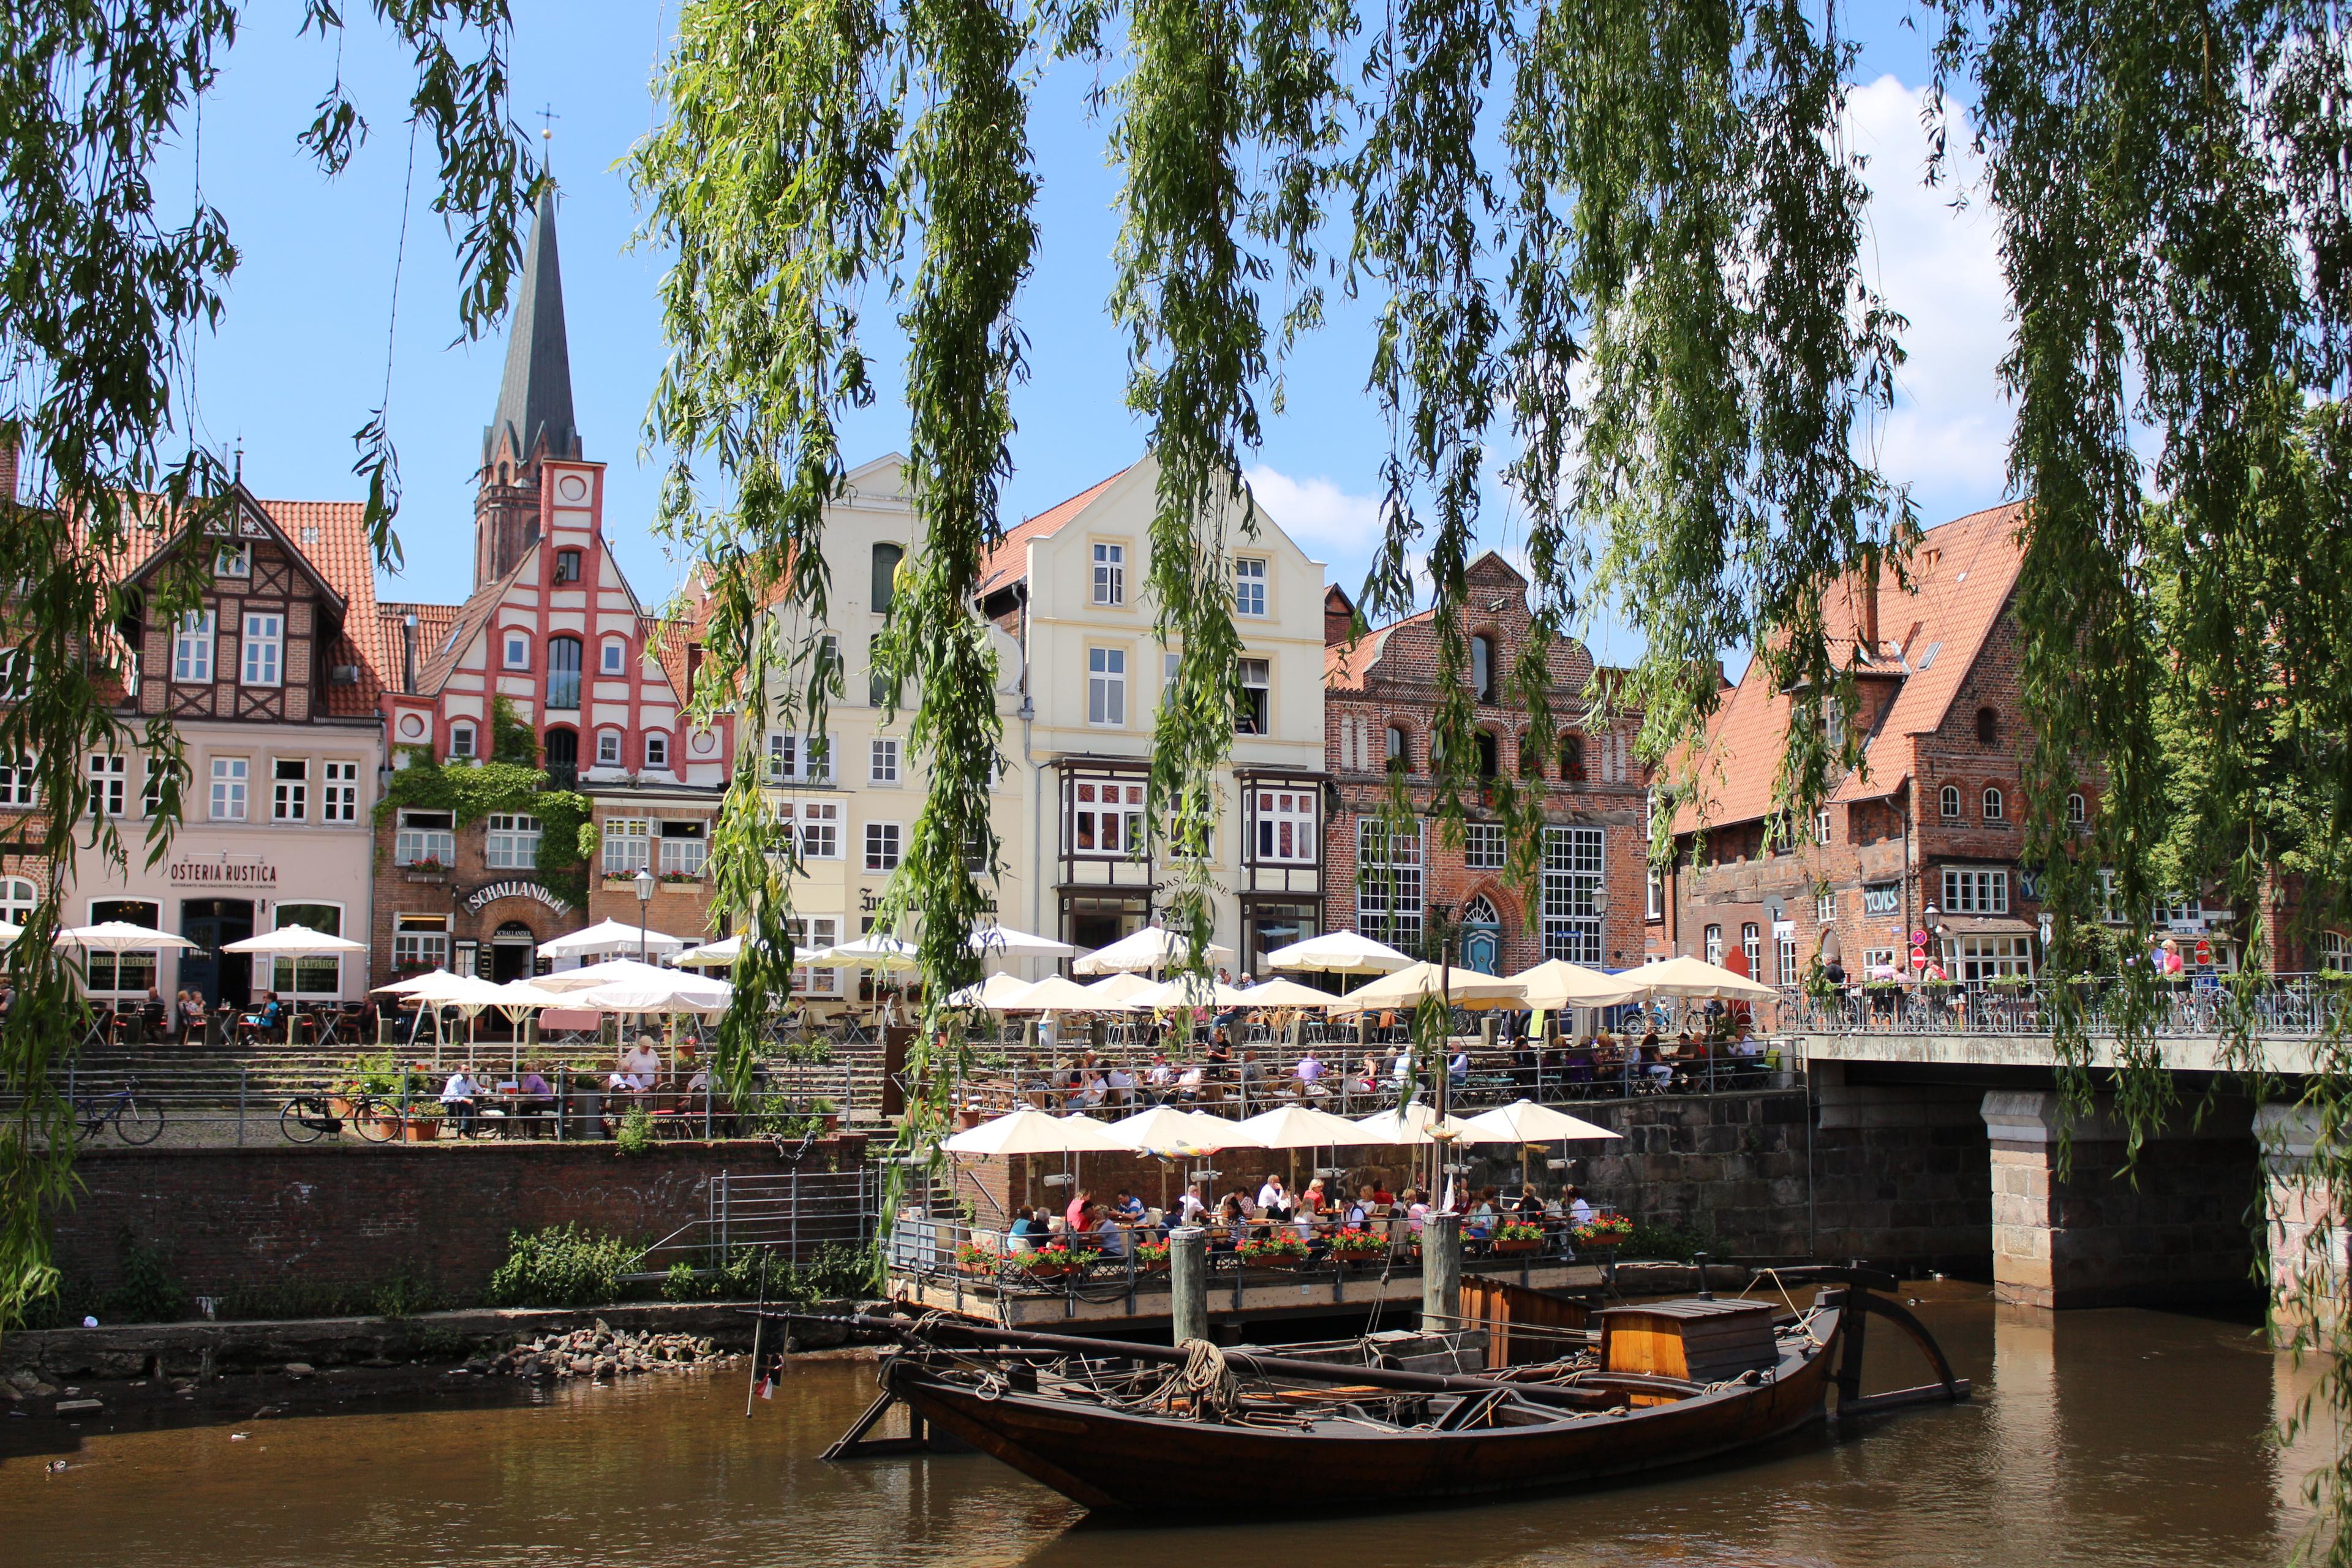 Der&nbsp;Stintmarkt&nbsp;(abgekürzt auch&nbsp;Stint) befindet sich im historischen Wasserviertel&nbsp;der Stadt Lüneburg&nbsp;und ist für seine zahlreichen sich in den mittelalterlichen Häusern befindenden Retstaurant und Kneipen bekannt.